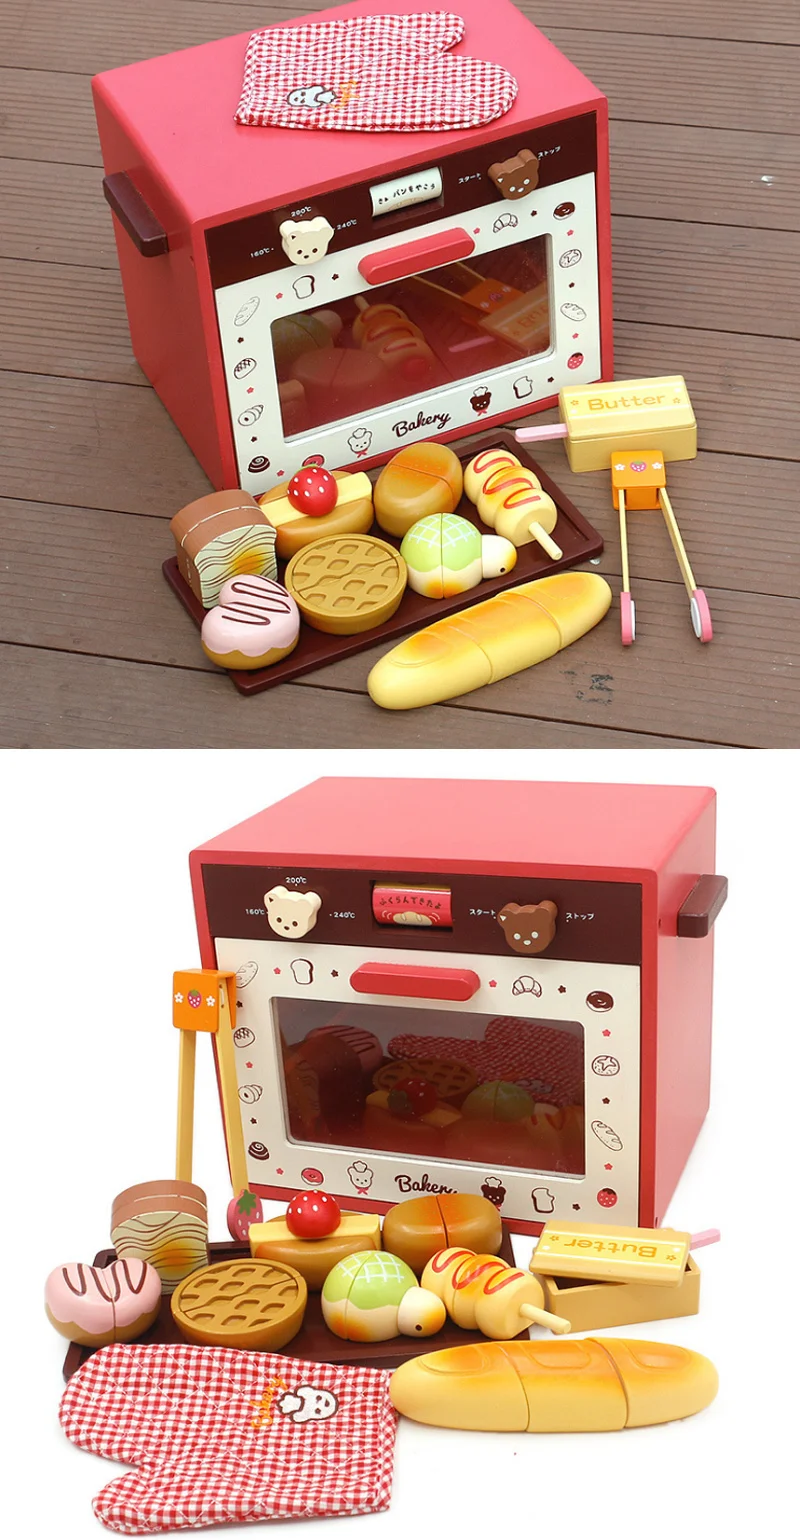 Набор деревянная игрушка ролевые игры игрушка Моделирование Магнитная микроволновая печь Деревянная Кухня Еда детская игрушка для новорожденных еда подарок на день рождения D92